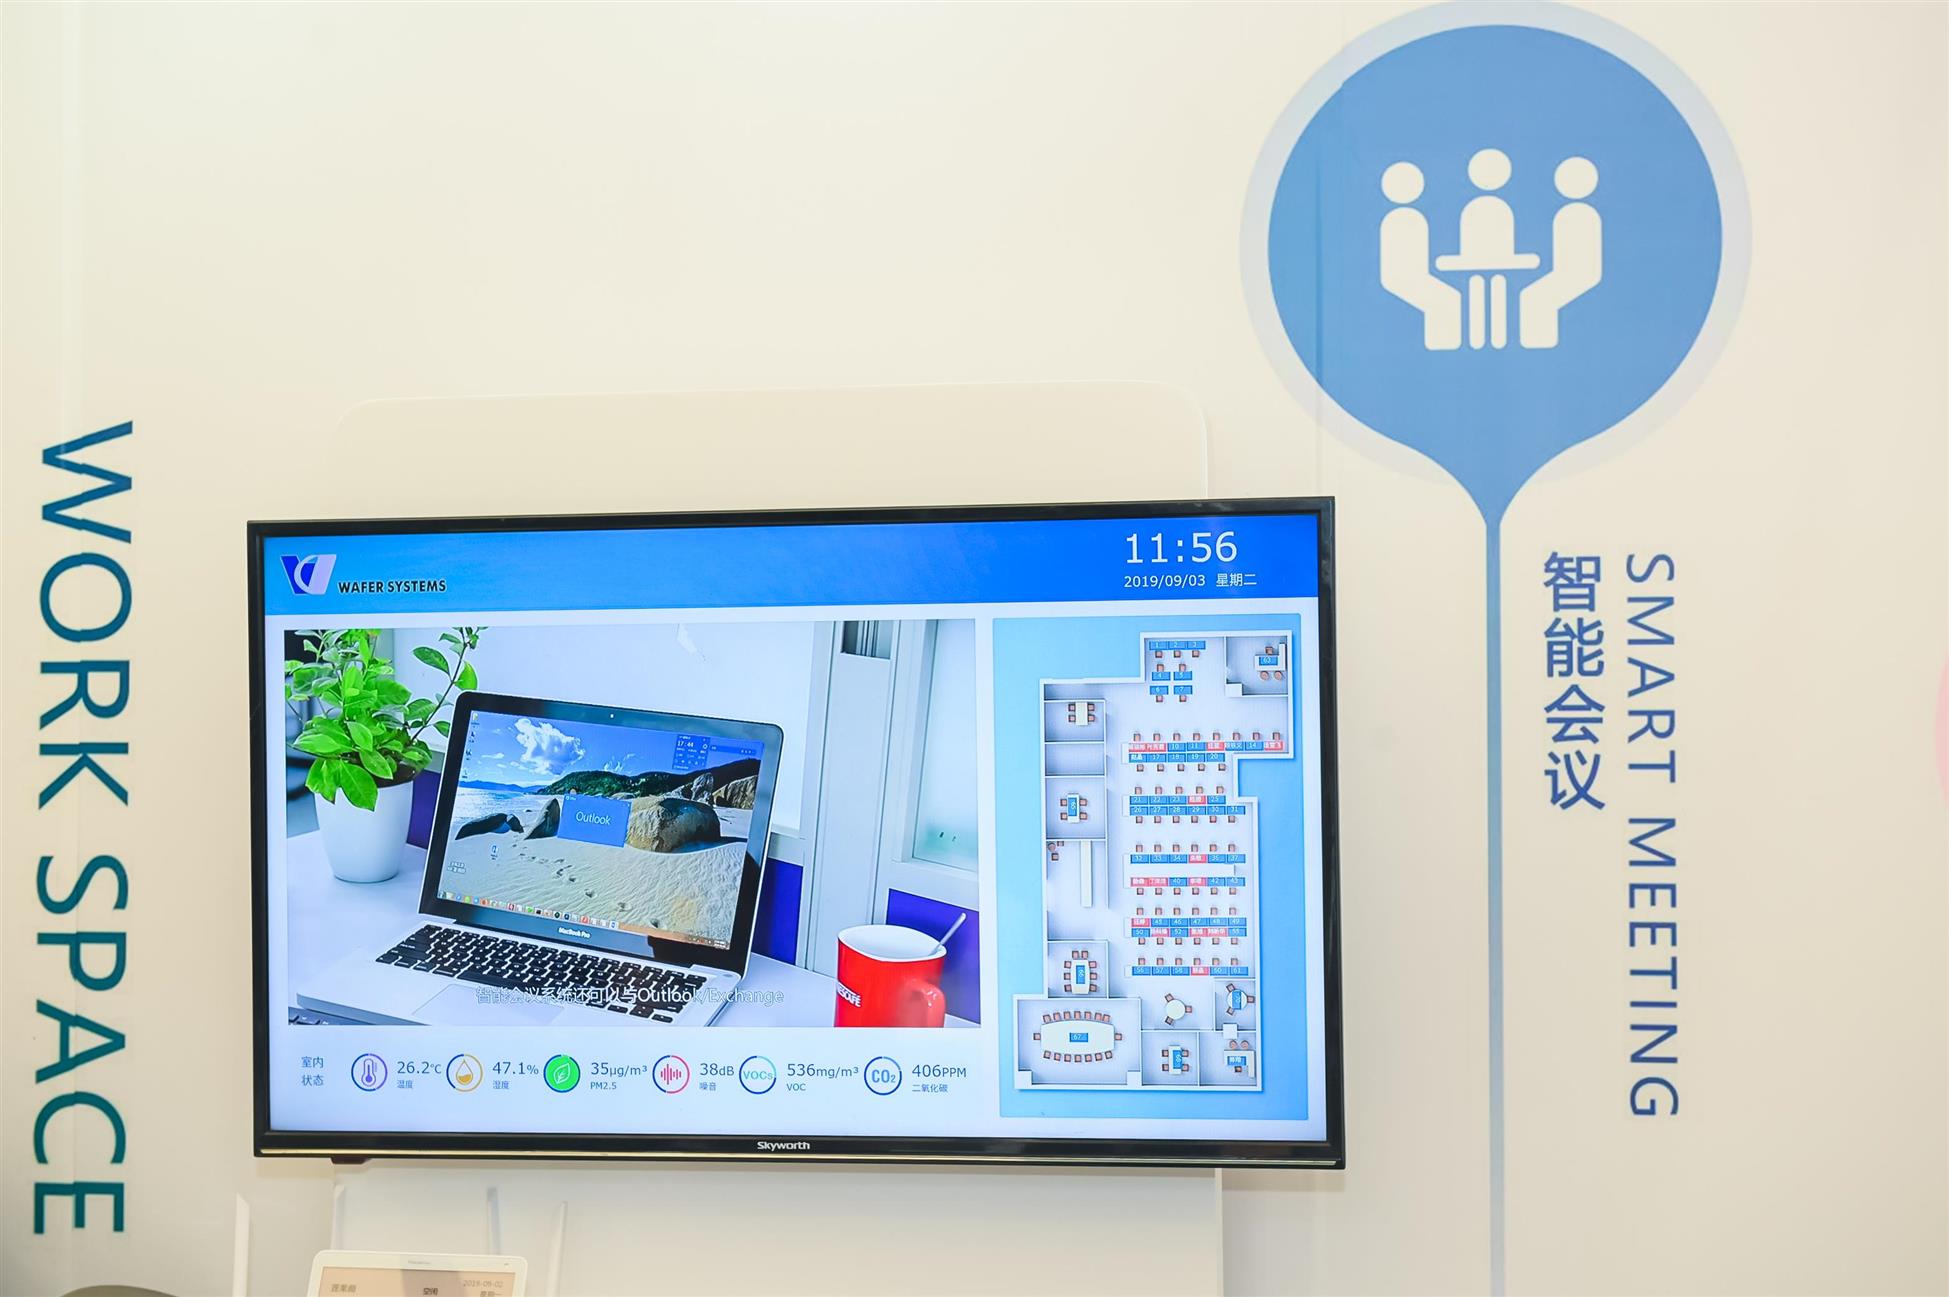 SSOT2020上海国际智能智慧办公展览会钉钉智慧办公